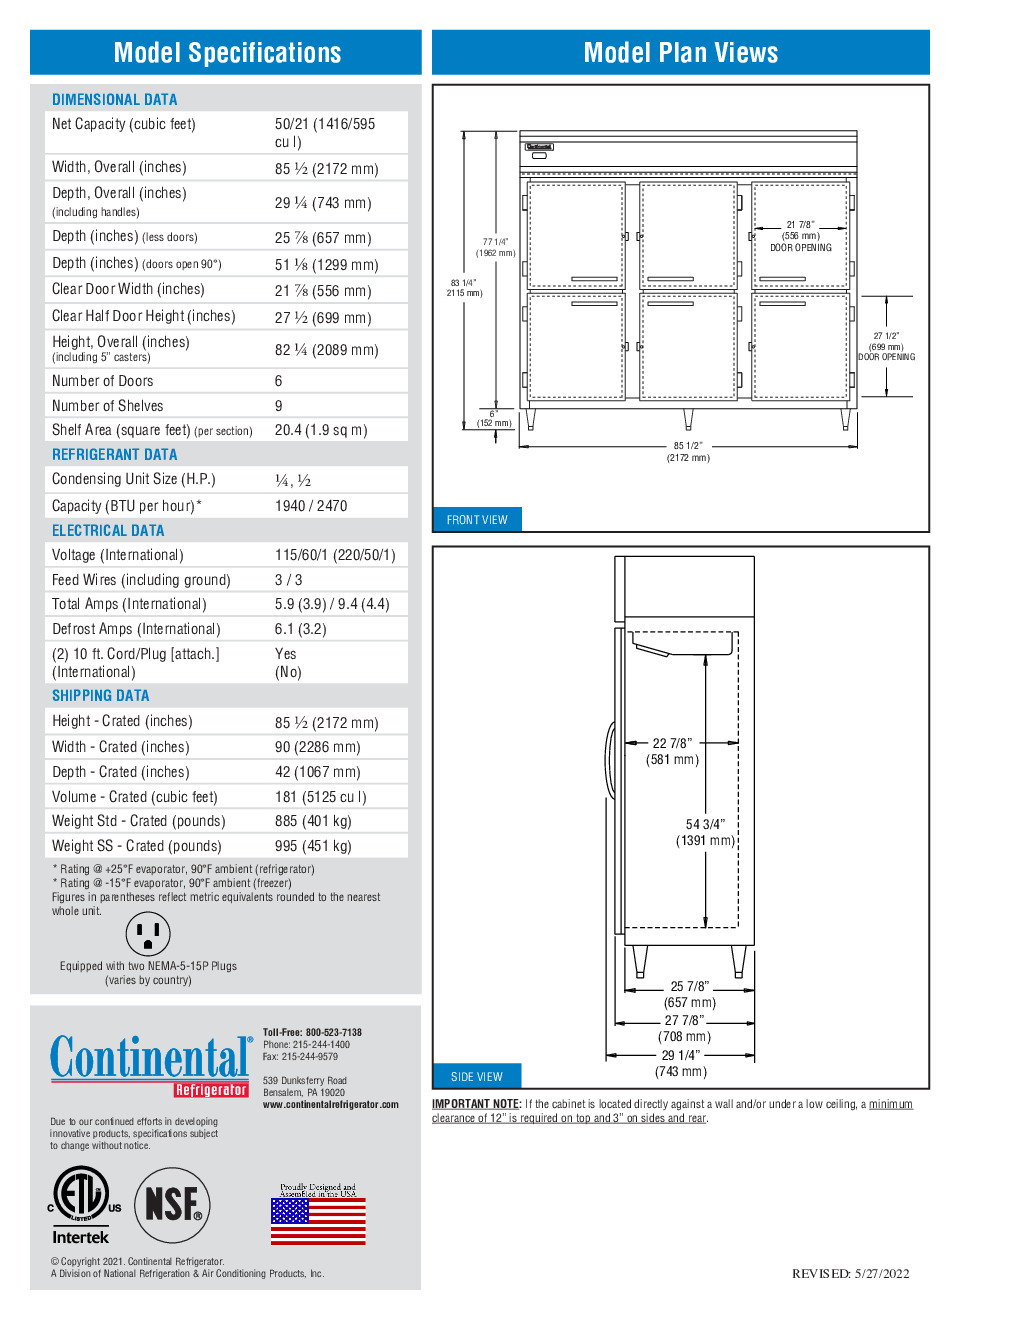 Continental Refrigerator DL3RFFES-HD 85